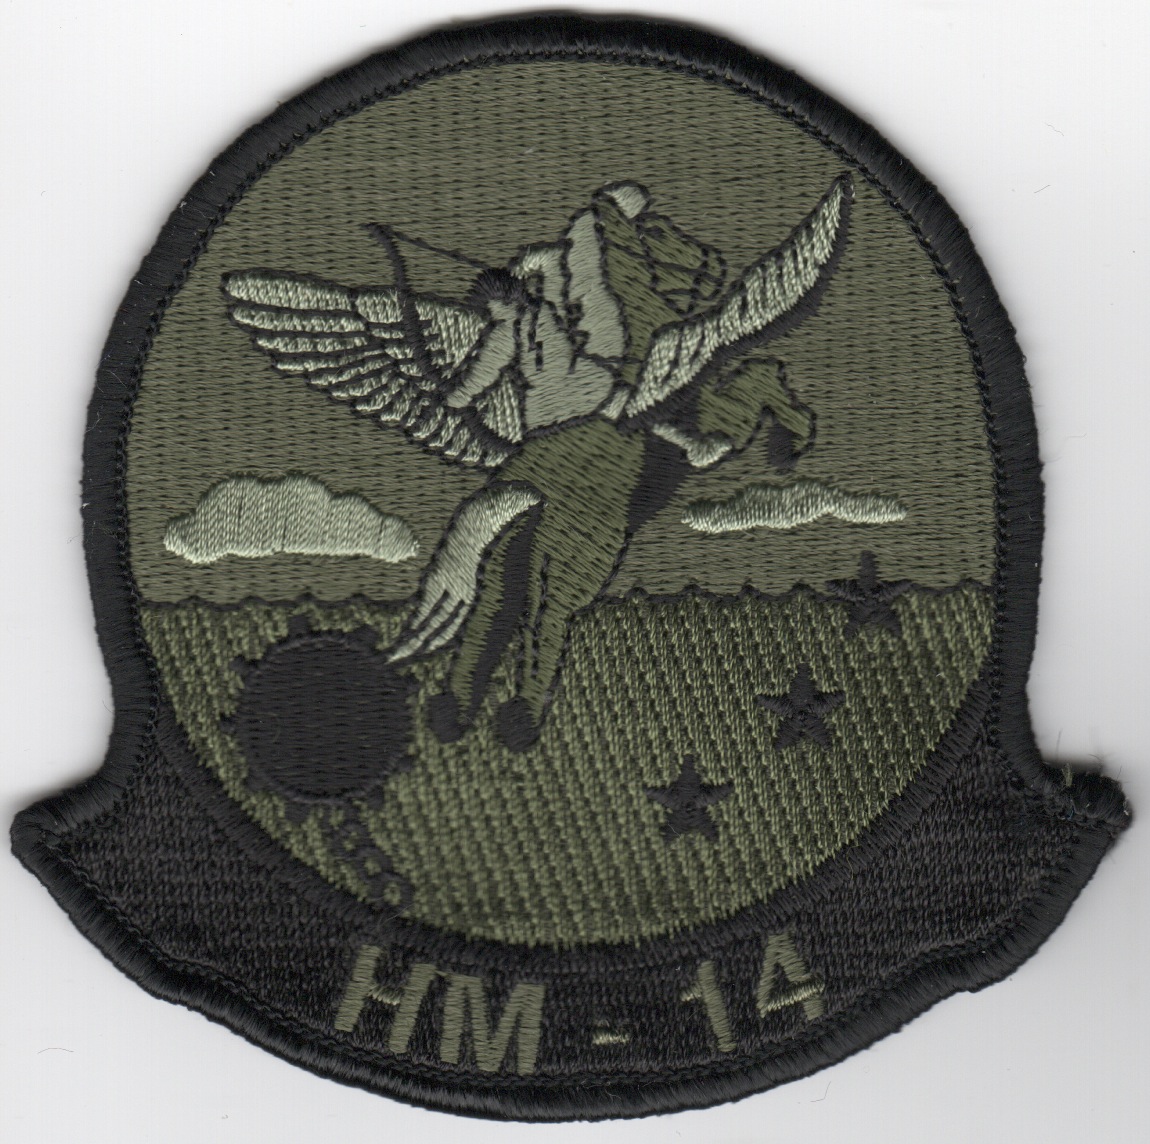 HM-14 Squadron Patch (Sub)